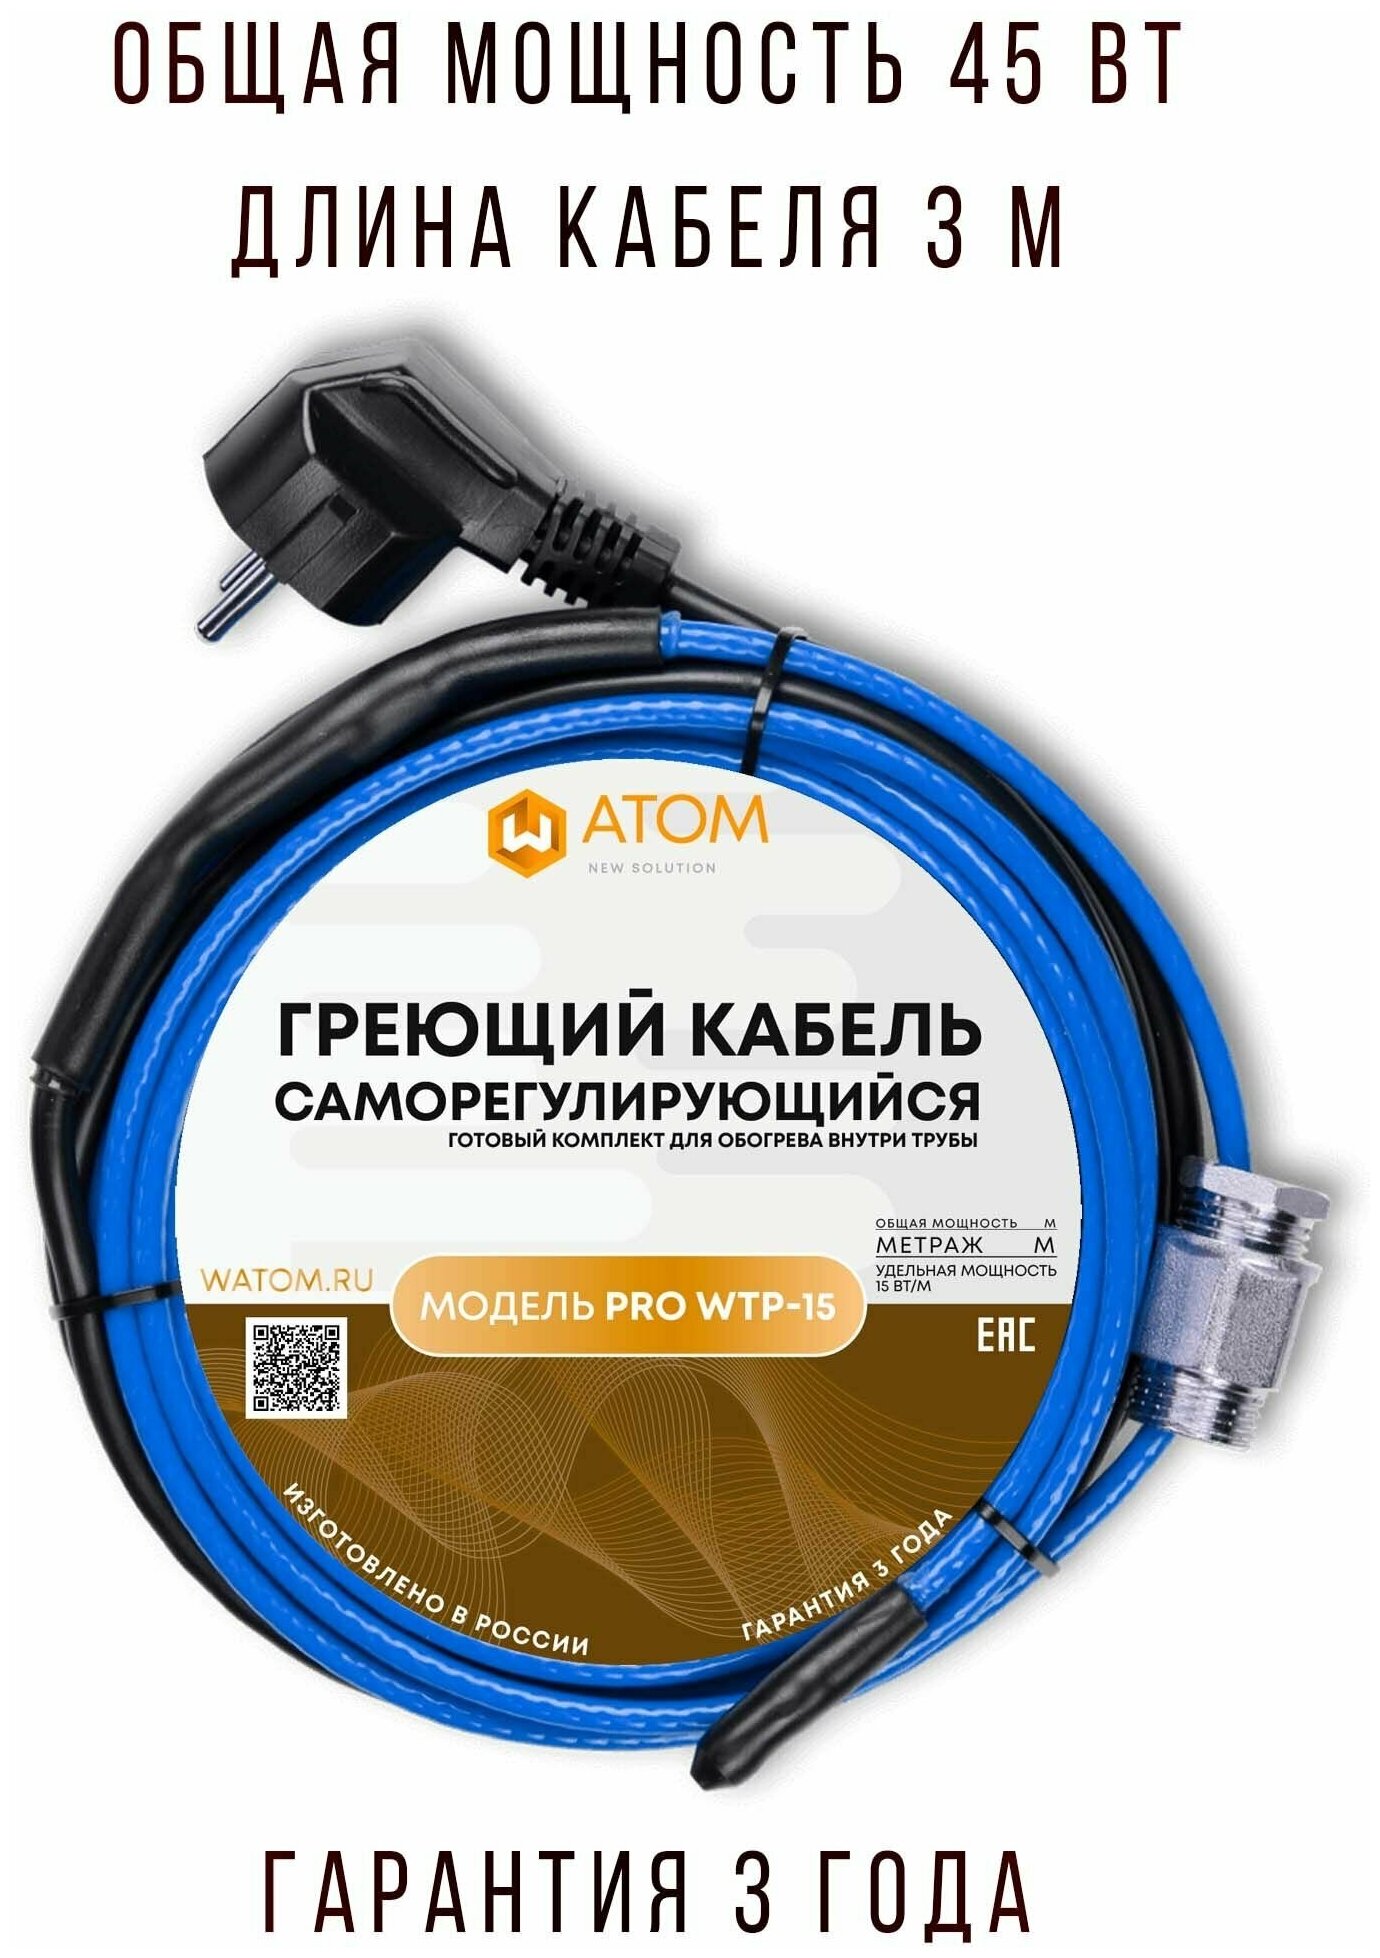 Саморегулирующийся греющий кабель в трубу WATOM PRO WTP-15, 45 Вт, 3 м